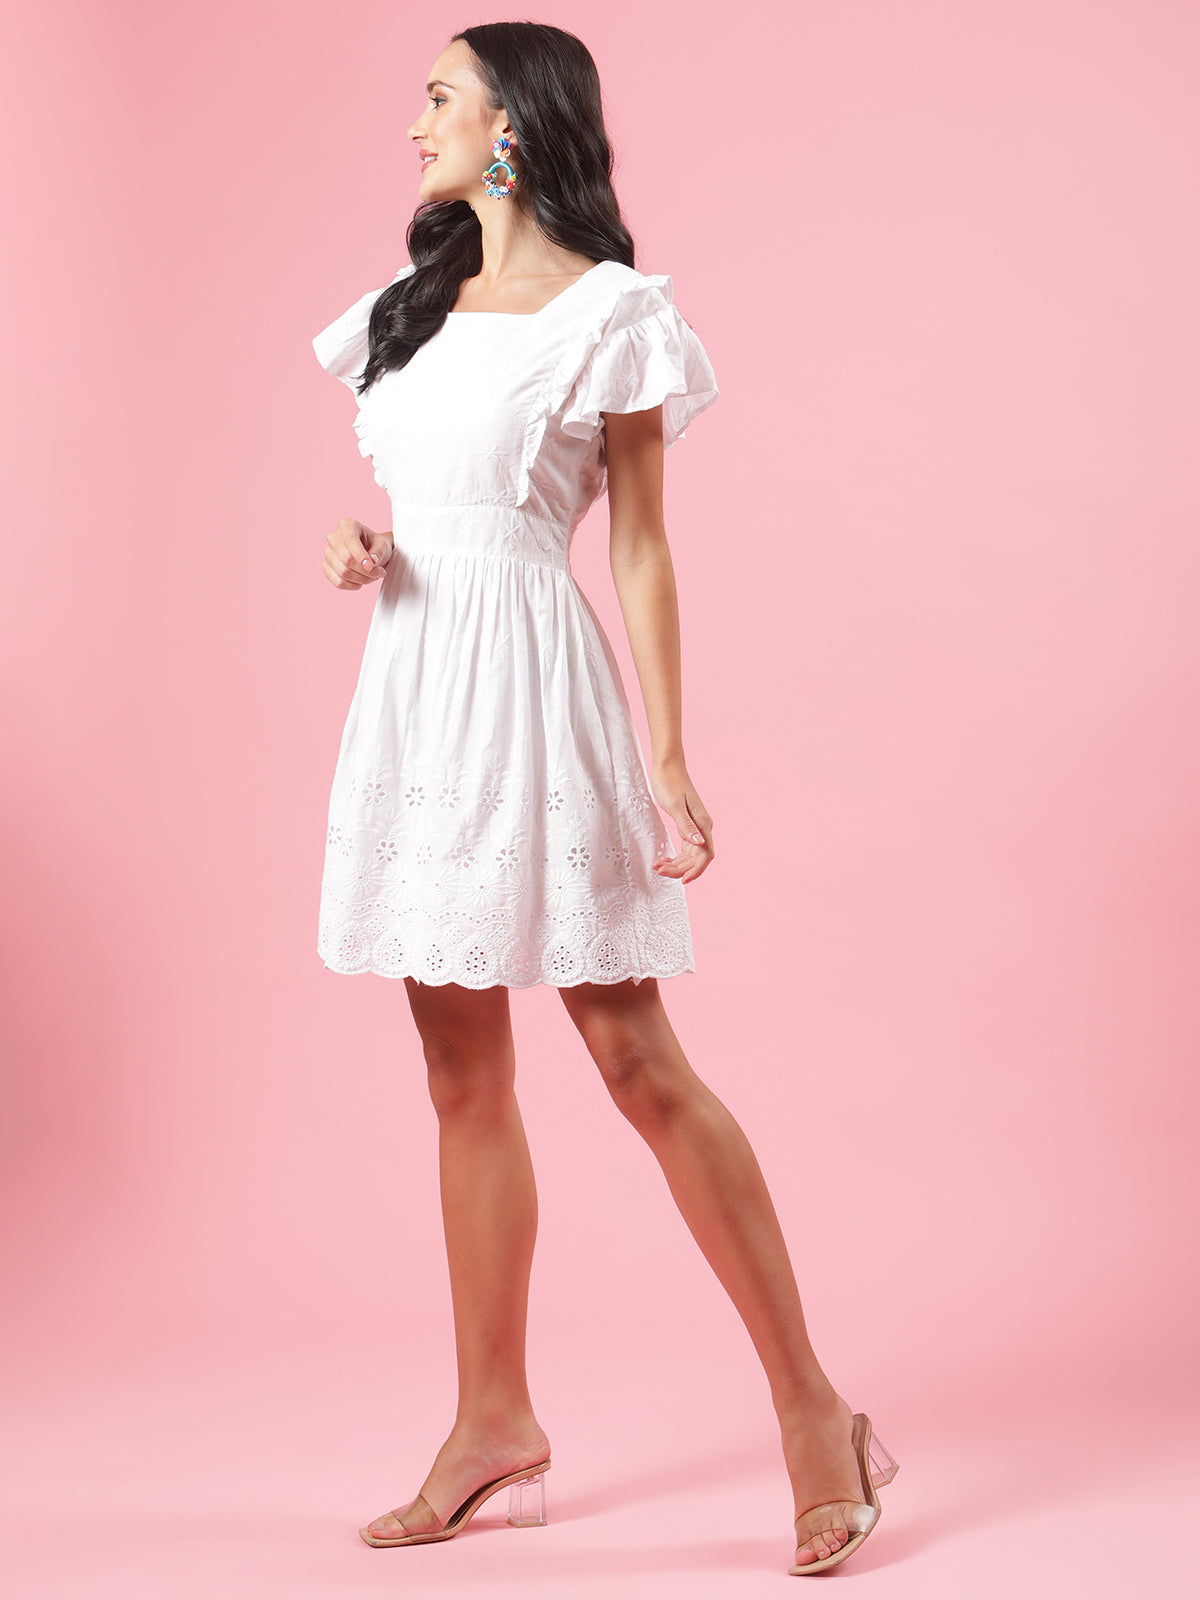 Blaze White Schiffli Womens Cotton Summer Party Dress with Frills